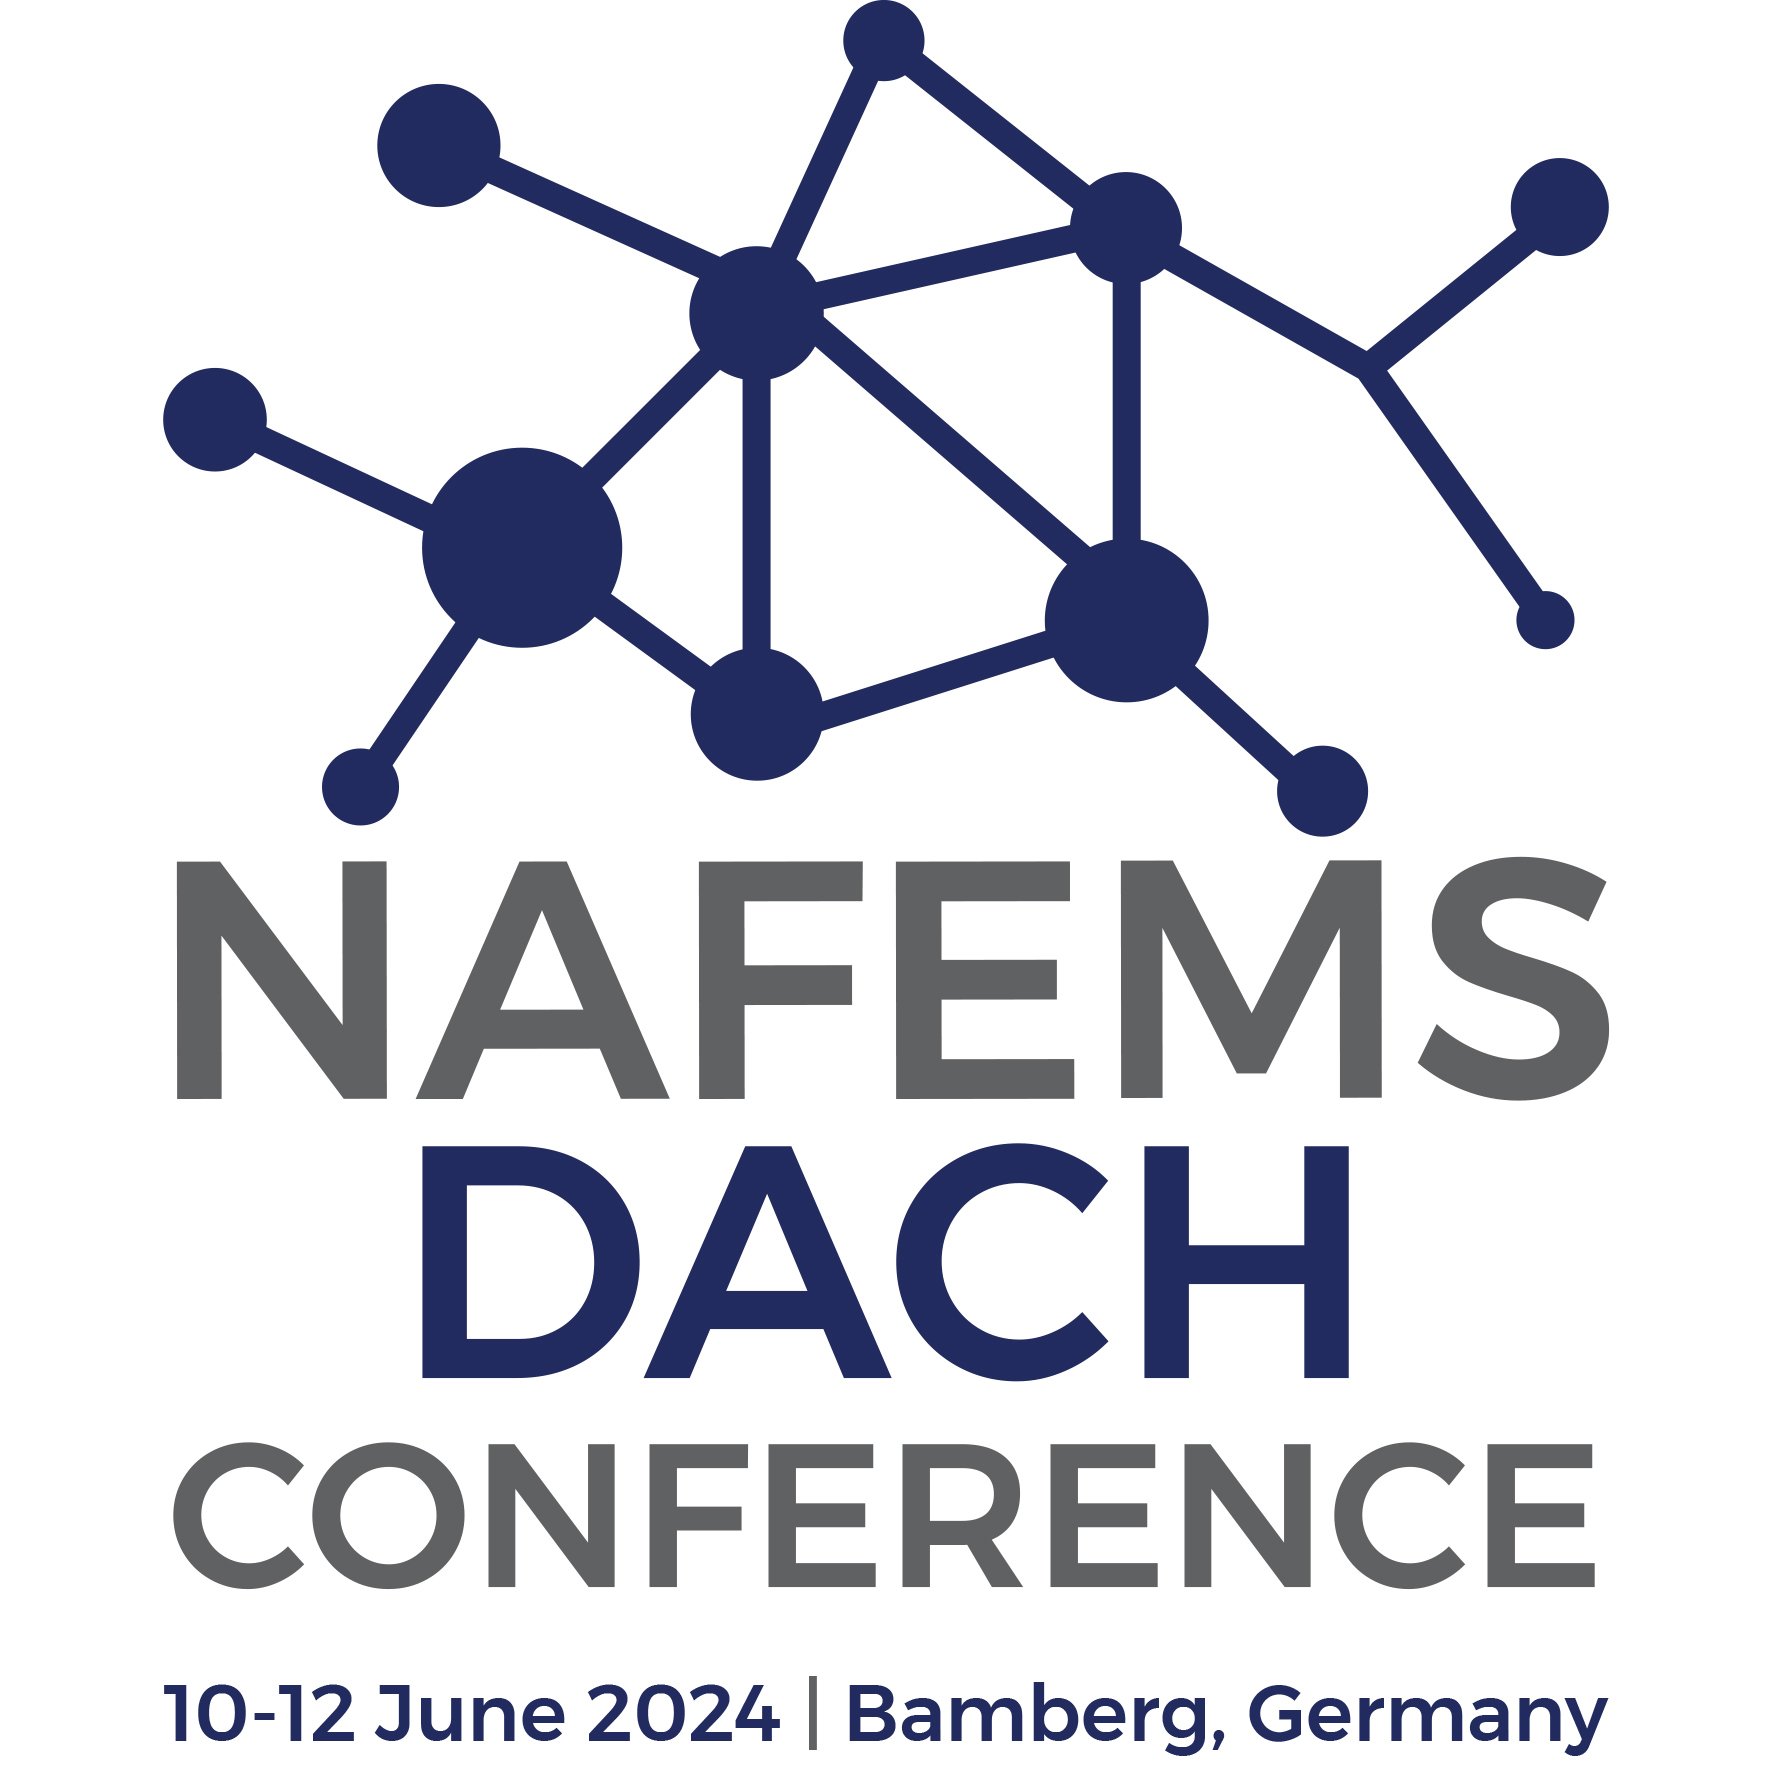 NAFEMS Regional Conference 2022 - DACH - NRC22